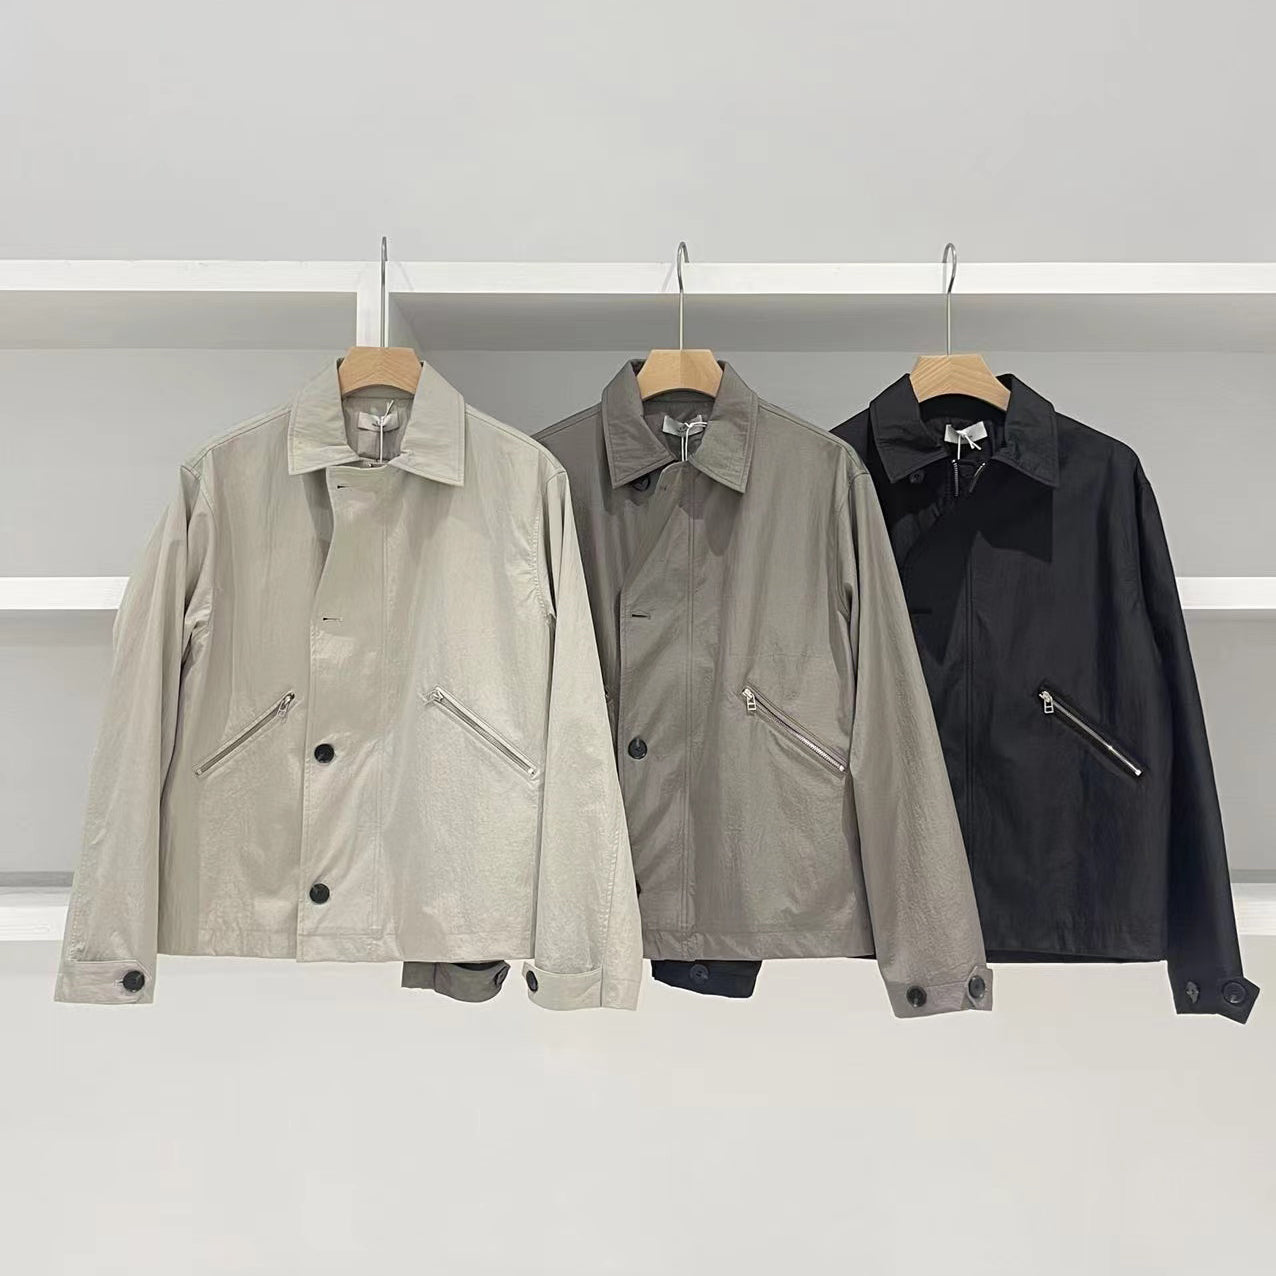 Metallic Nylon Composite Jacket Lightweight & Stylish for Autumn